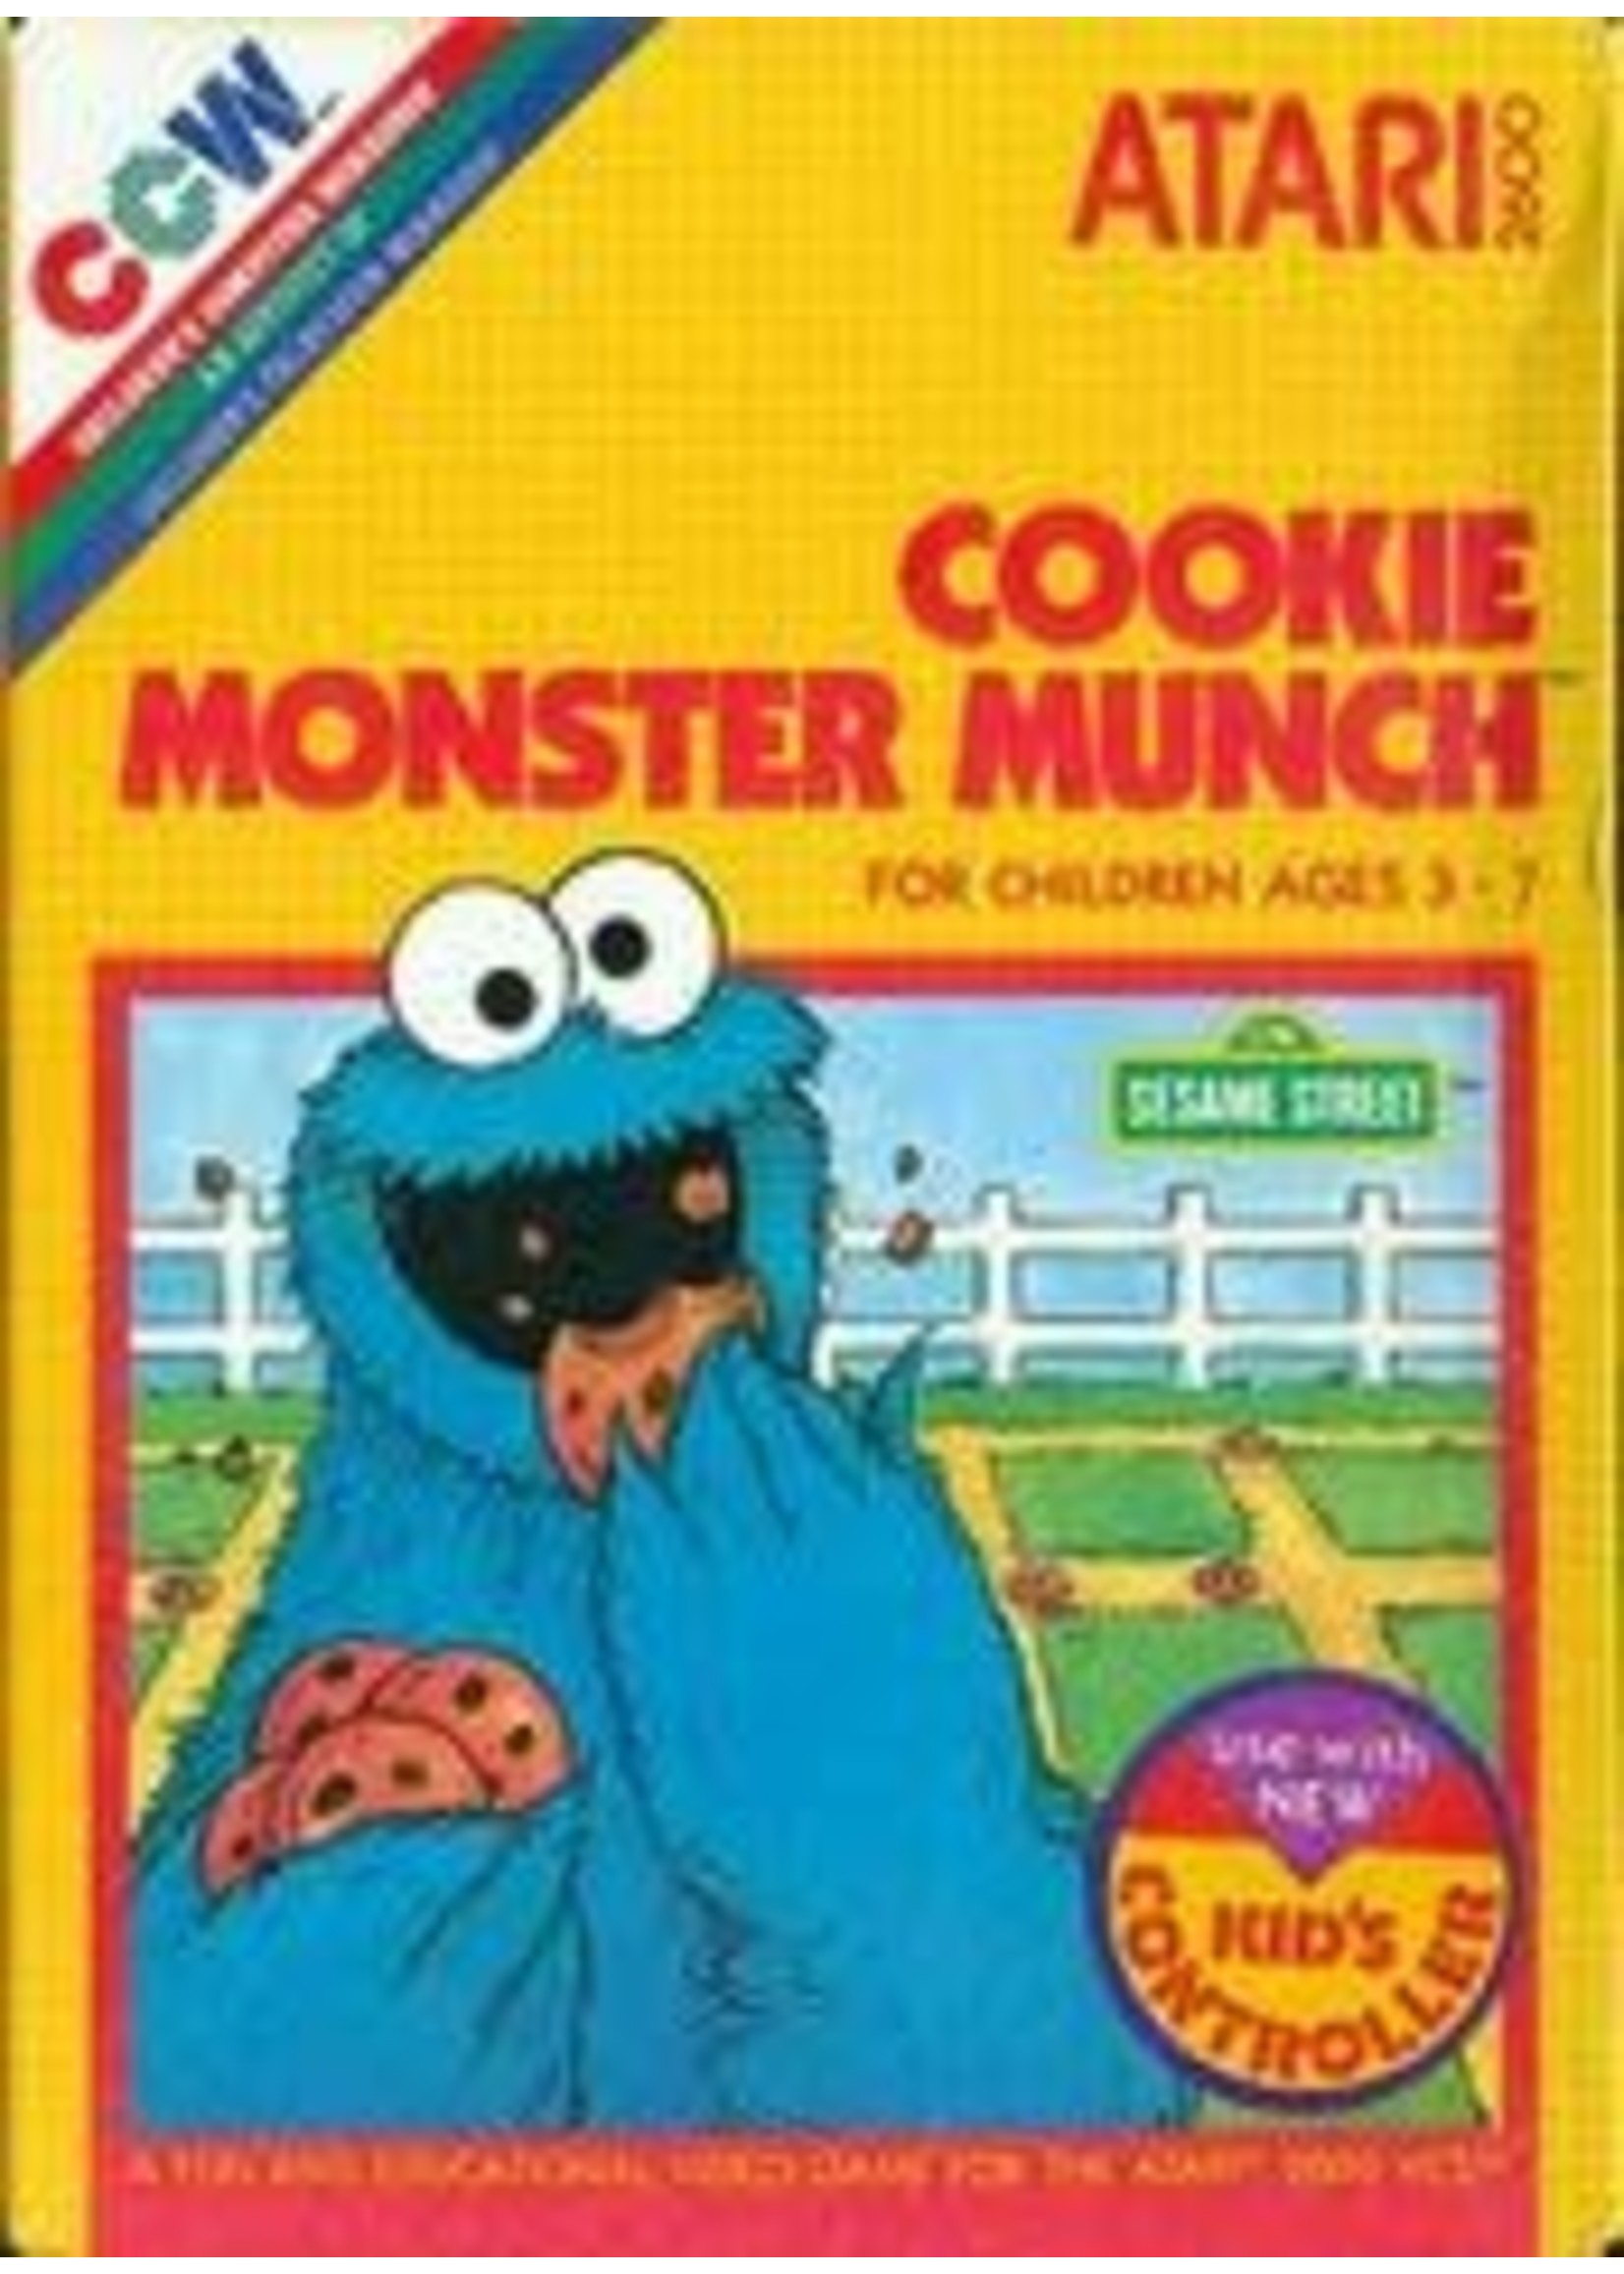 Cookie Monster Munch Atari 2600